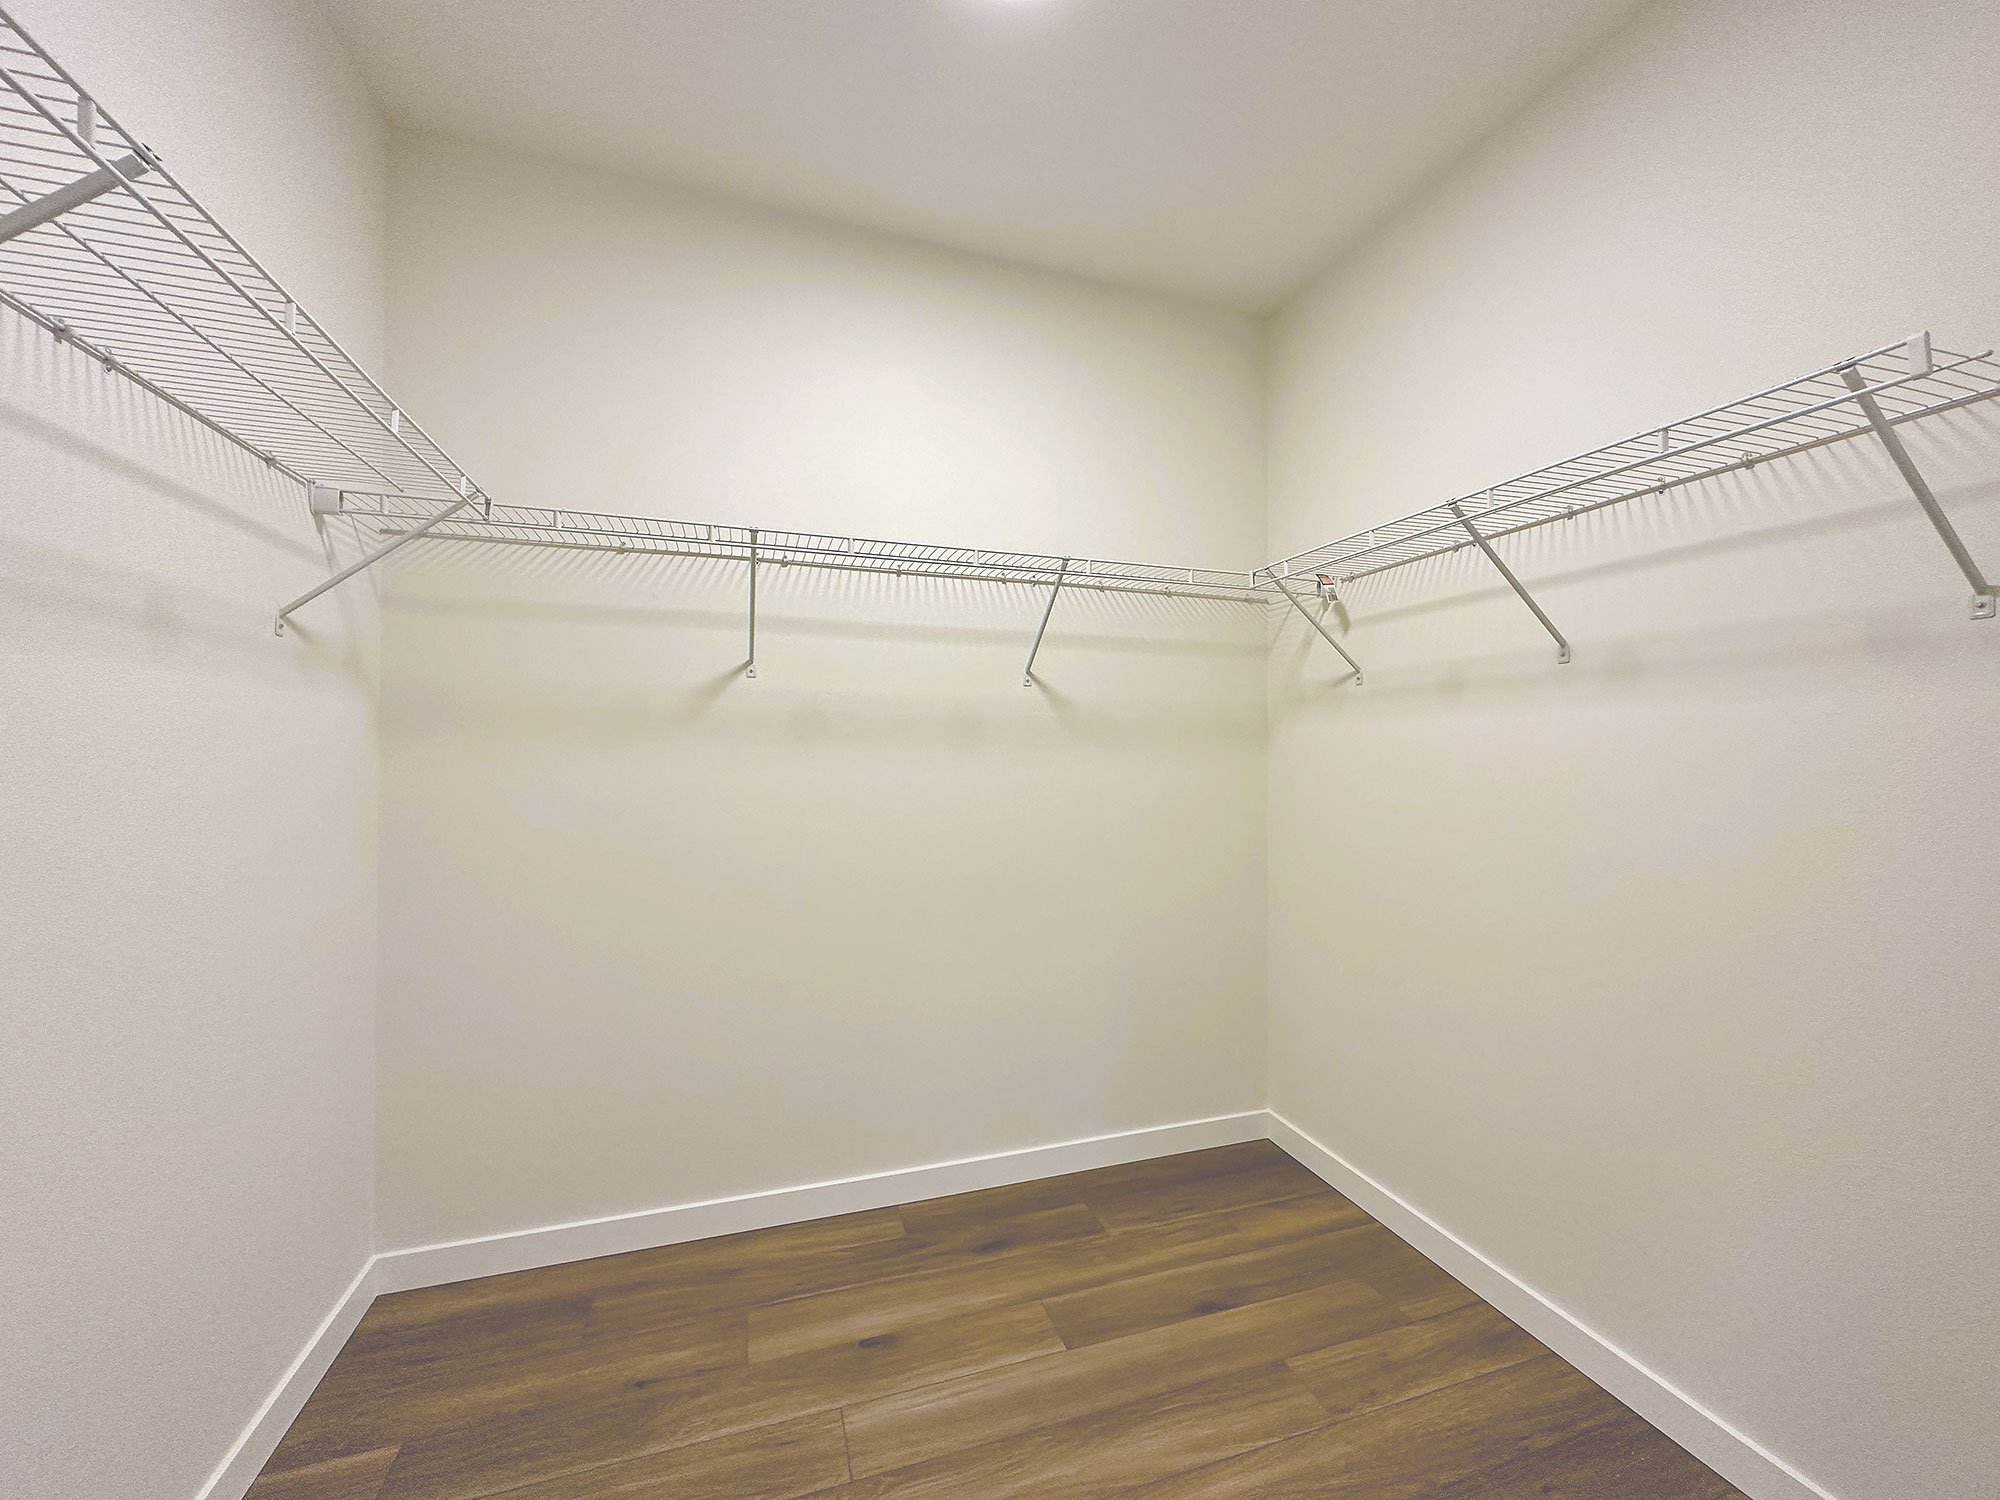 Main Floor | Primary Bedroom - Walk-In Closet (Copy) (Copy)